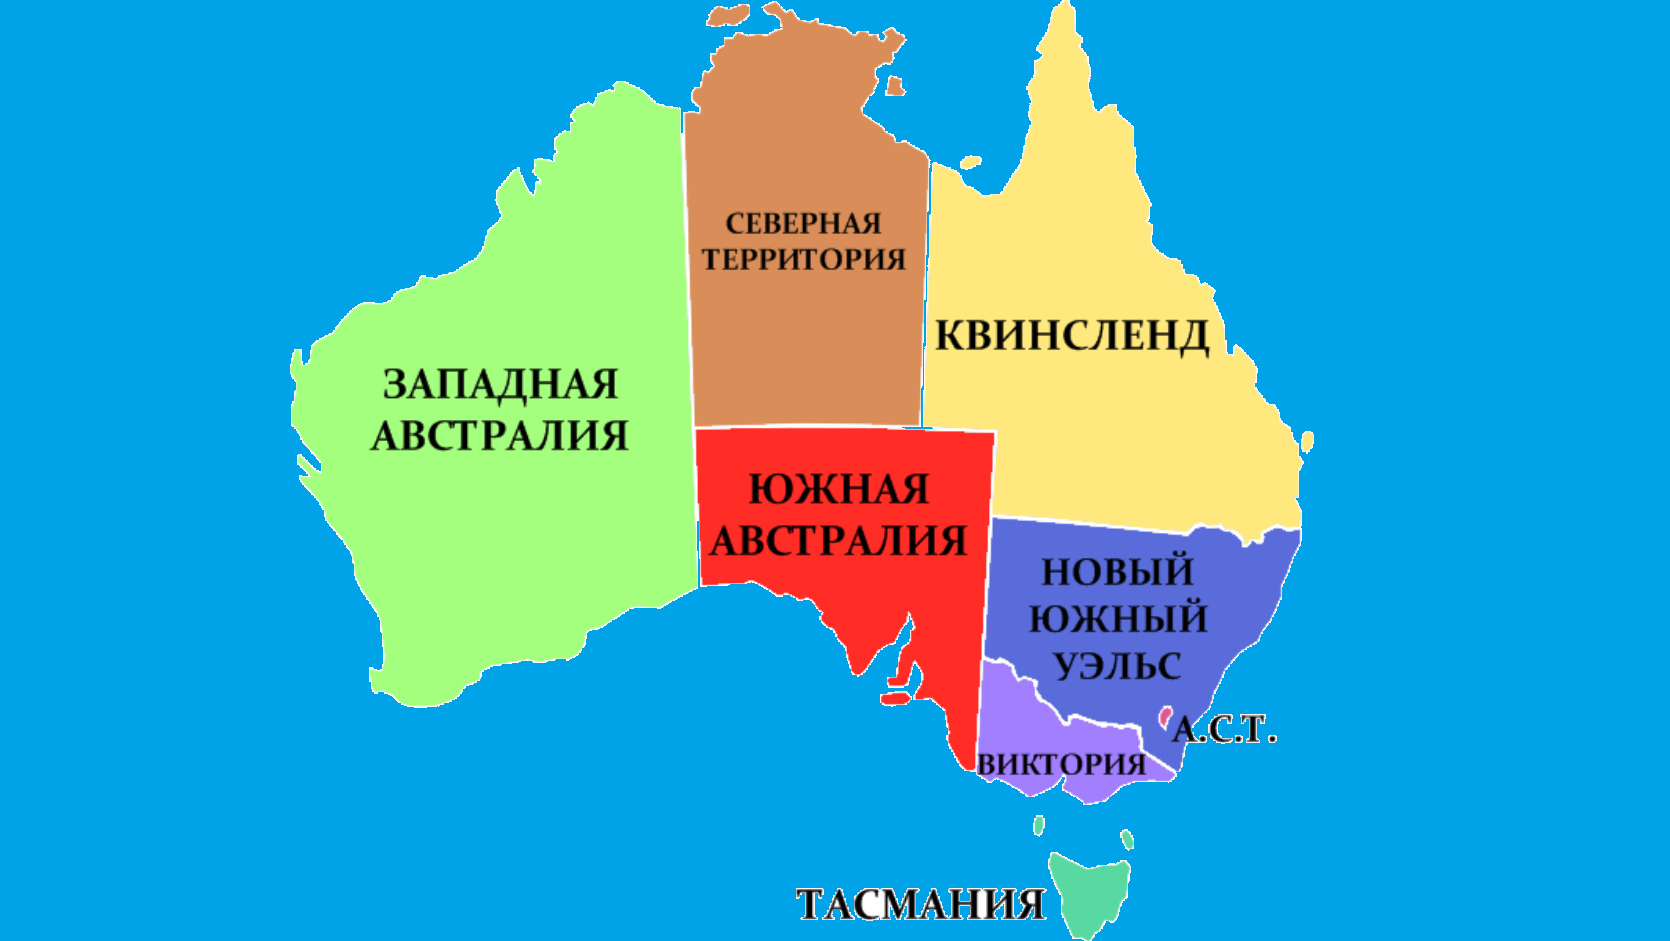 Австралия южный уэльс национальная премьер лига. Материк Австралия политическая карта. Штаты Австралии на карте. Политическая карта Австралии.